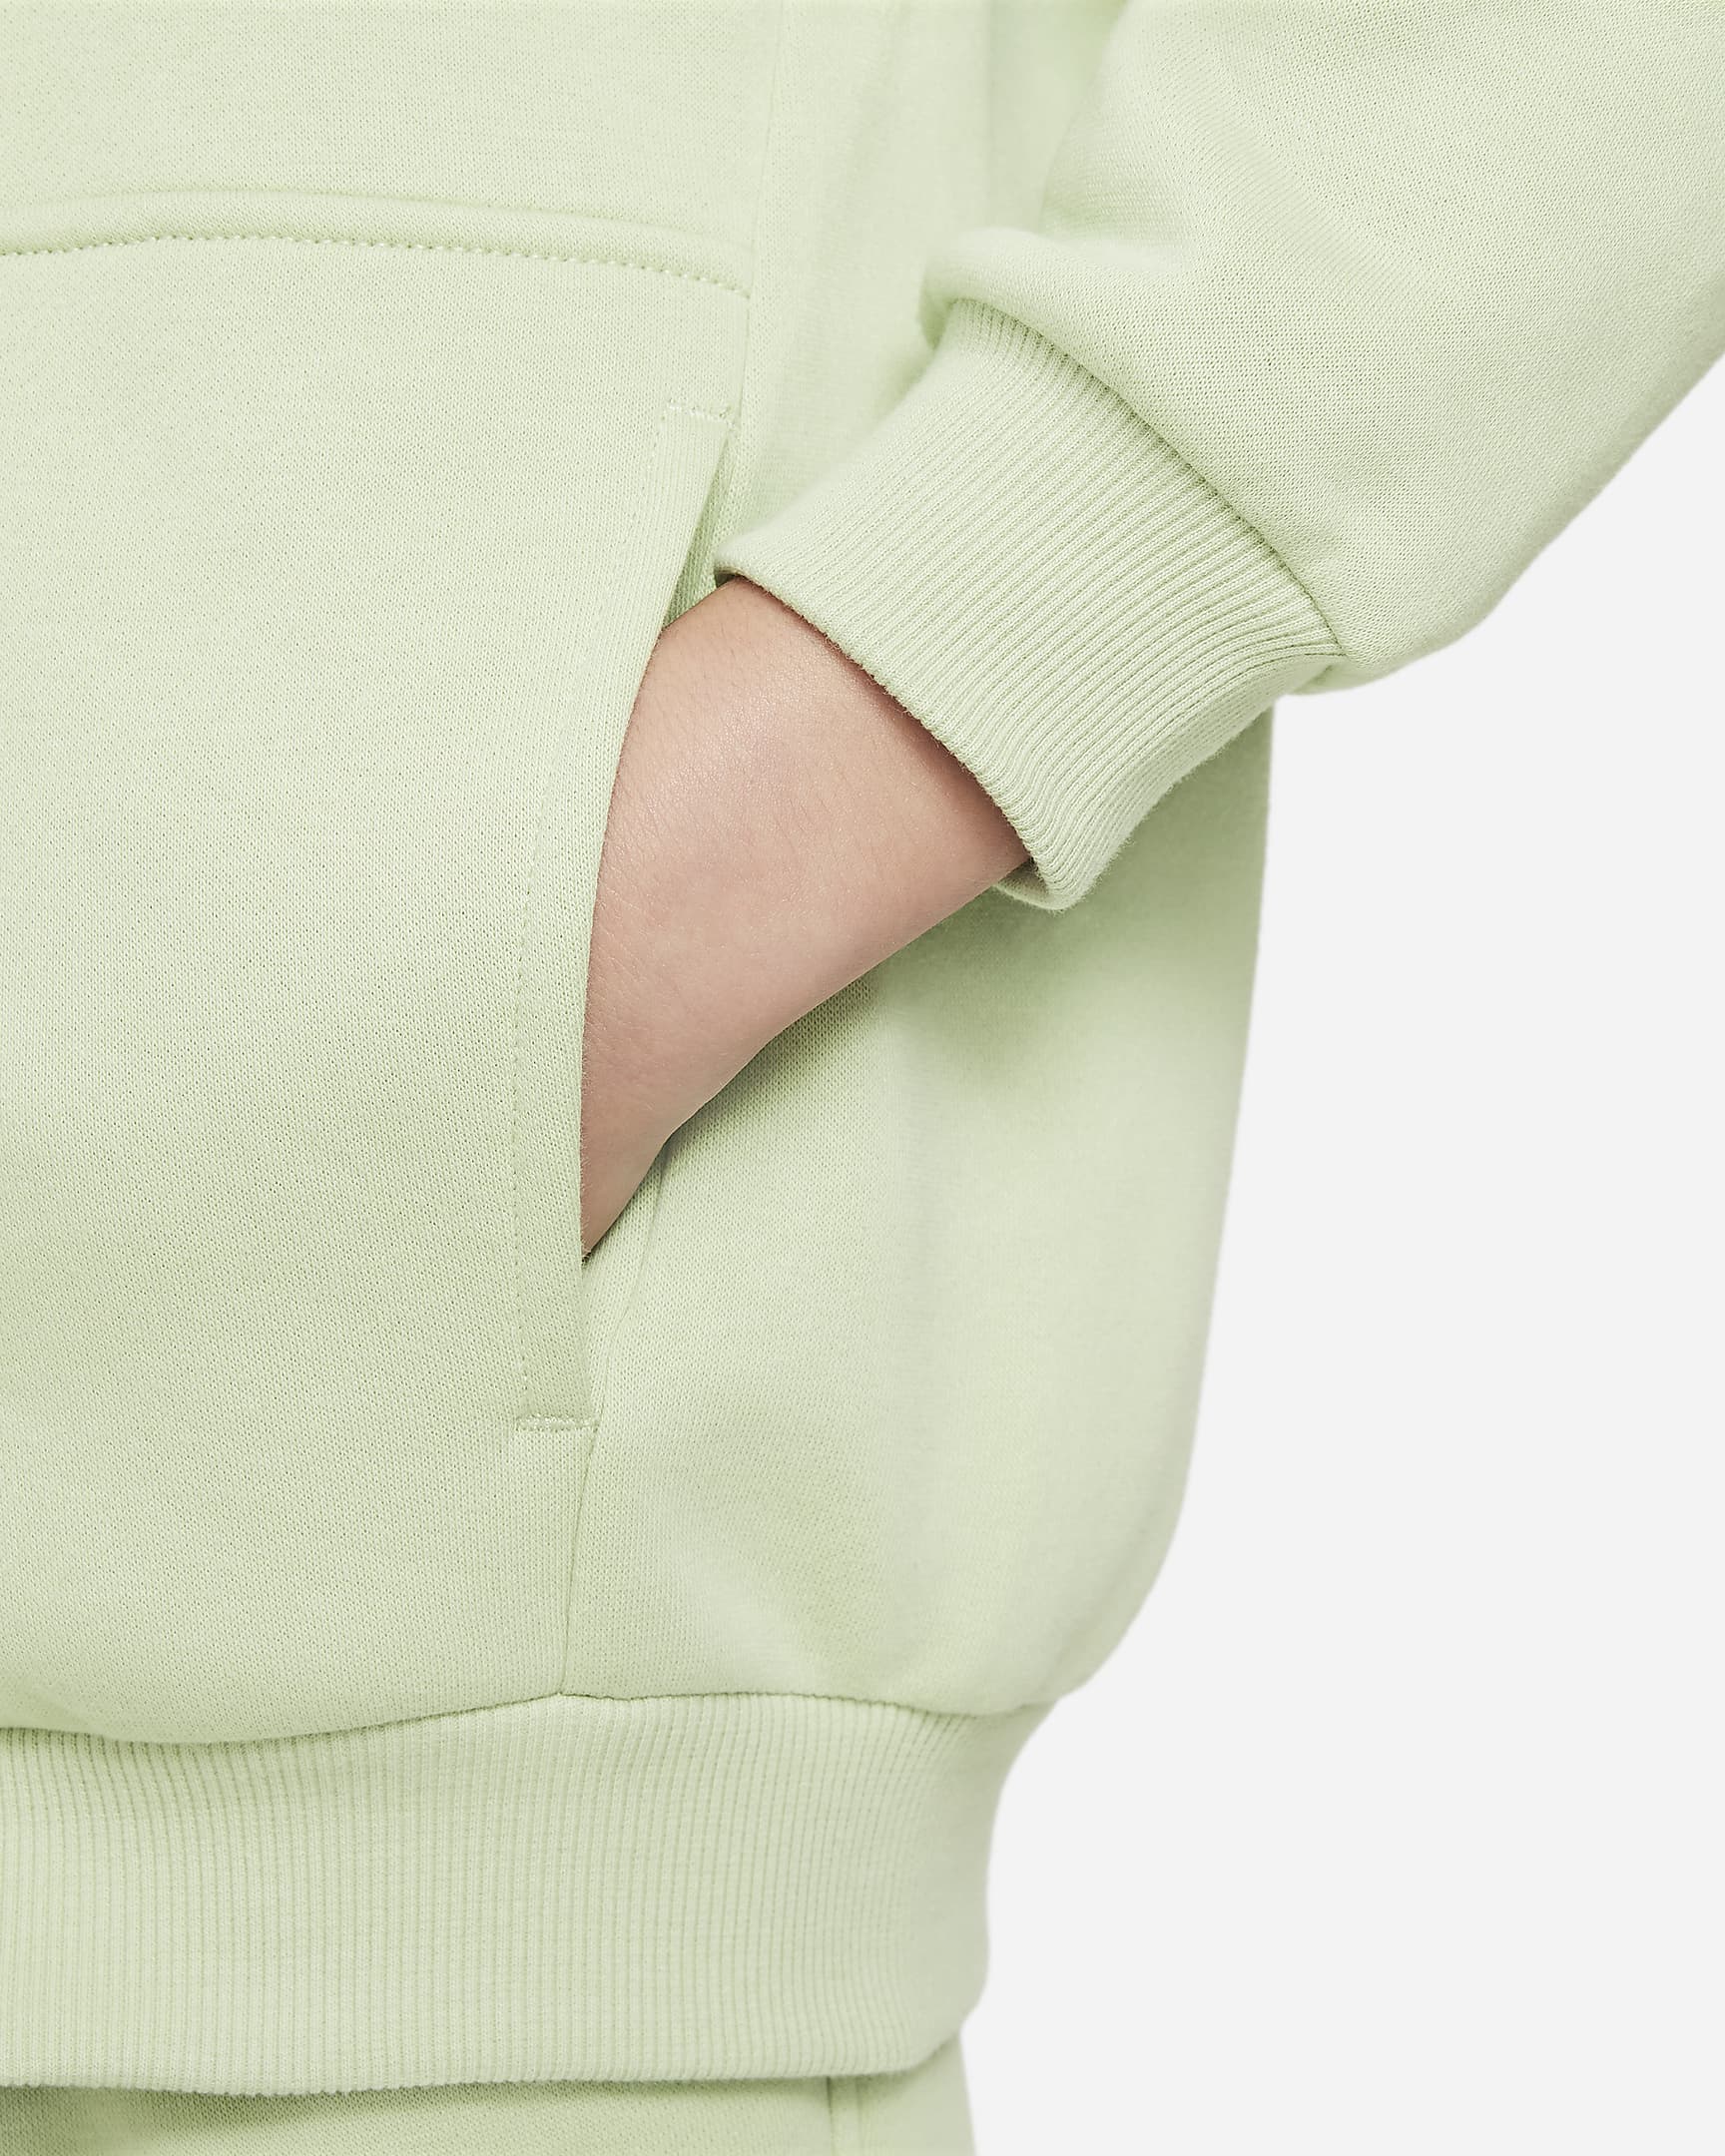 Nike Sportswear Club Fleece Older Kids' (Girls') Oversized Full-Zip ...